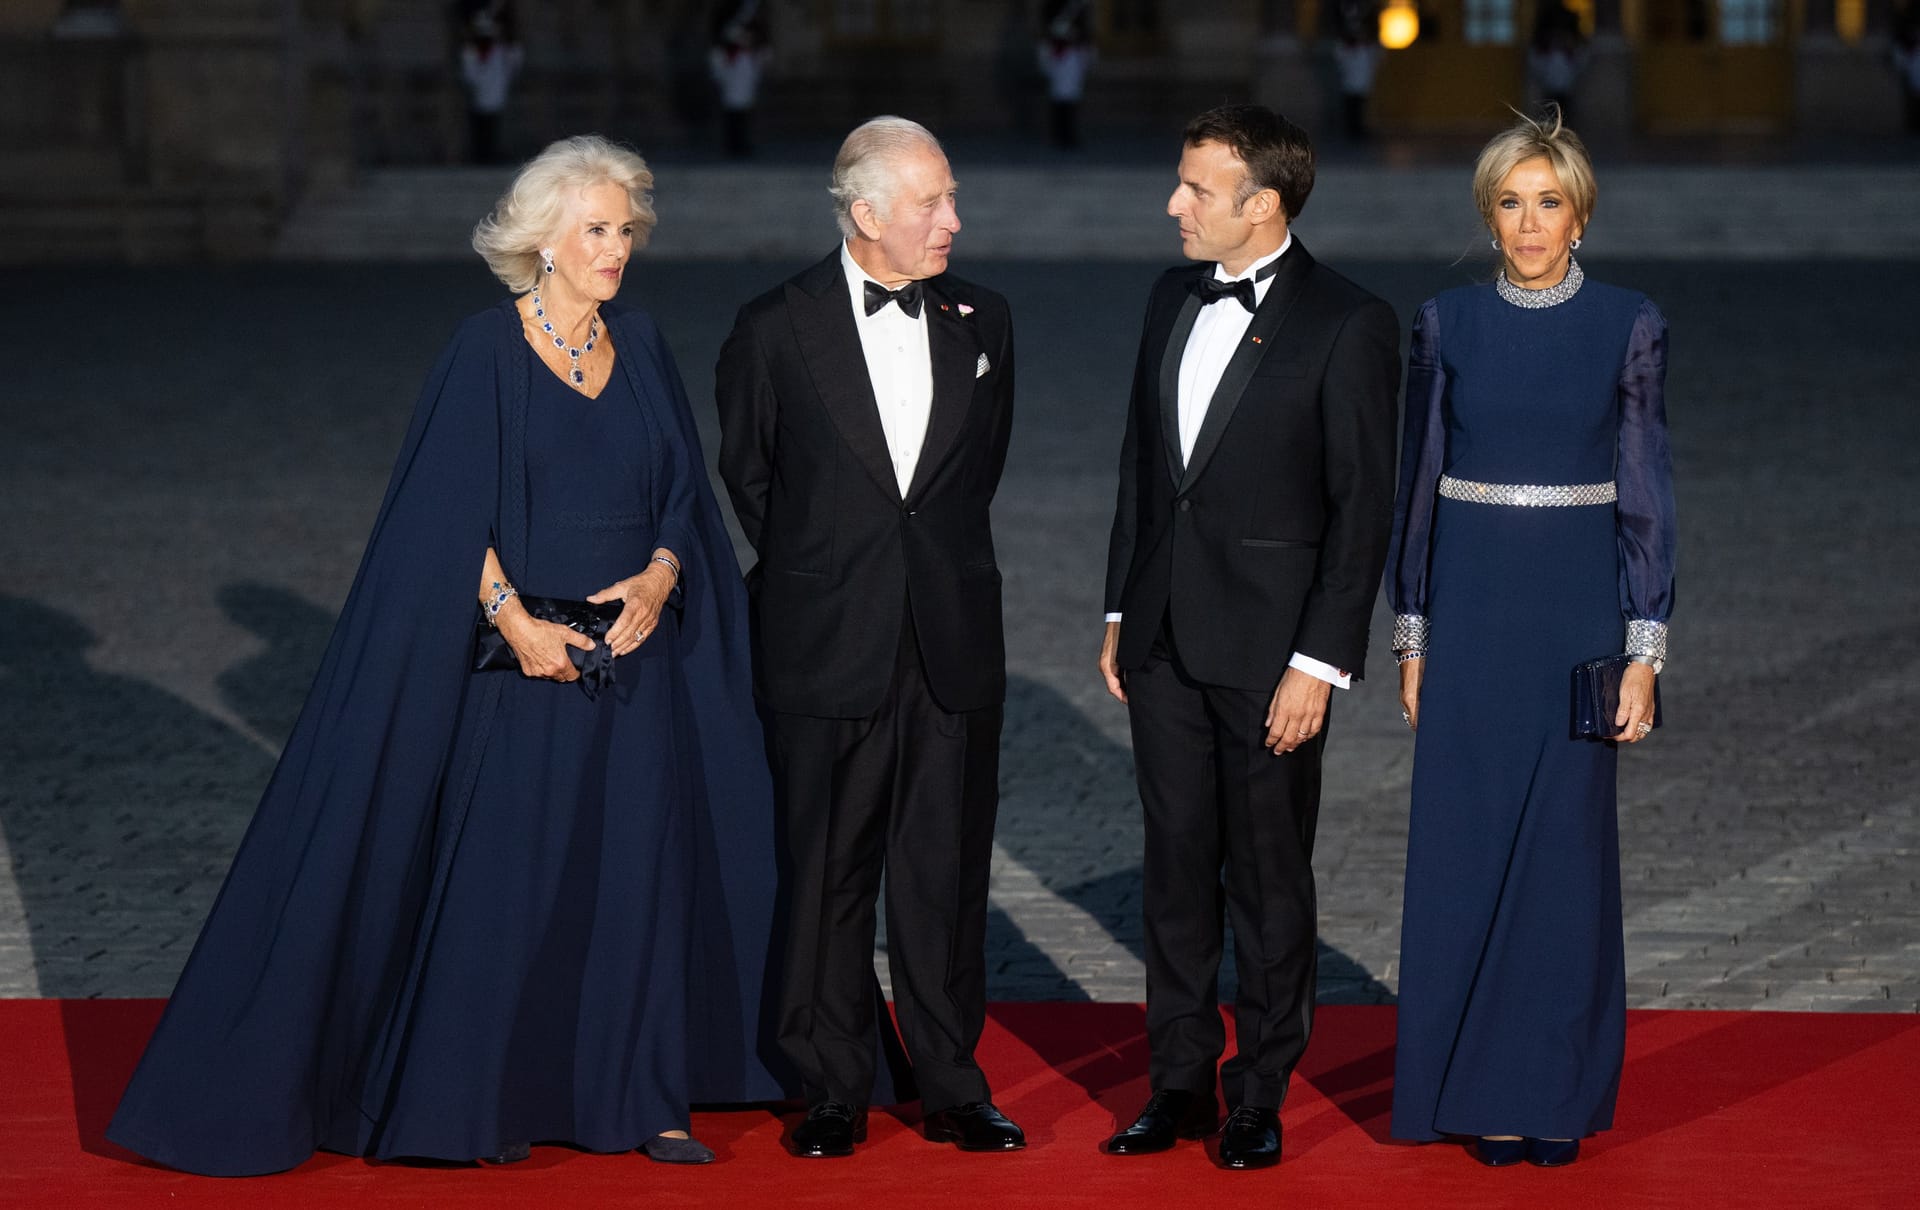 Königin Camilla, König Charles, Emmanuel Macron und Brigitte Macron: Die Vier posierten auf dem roten Teppich für Fotos.